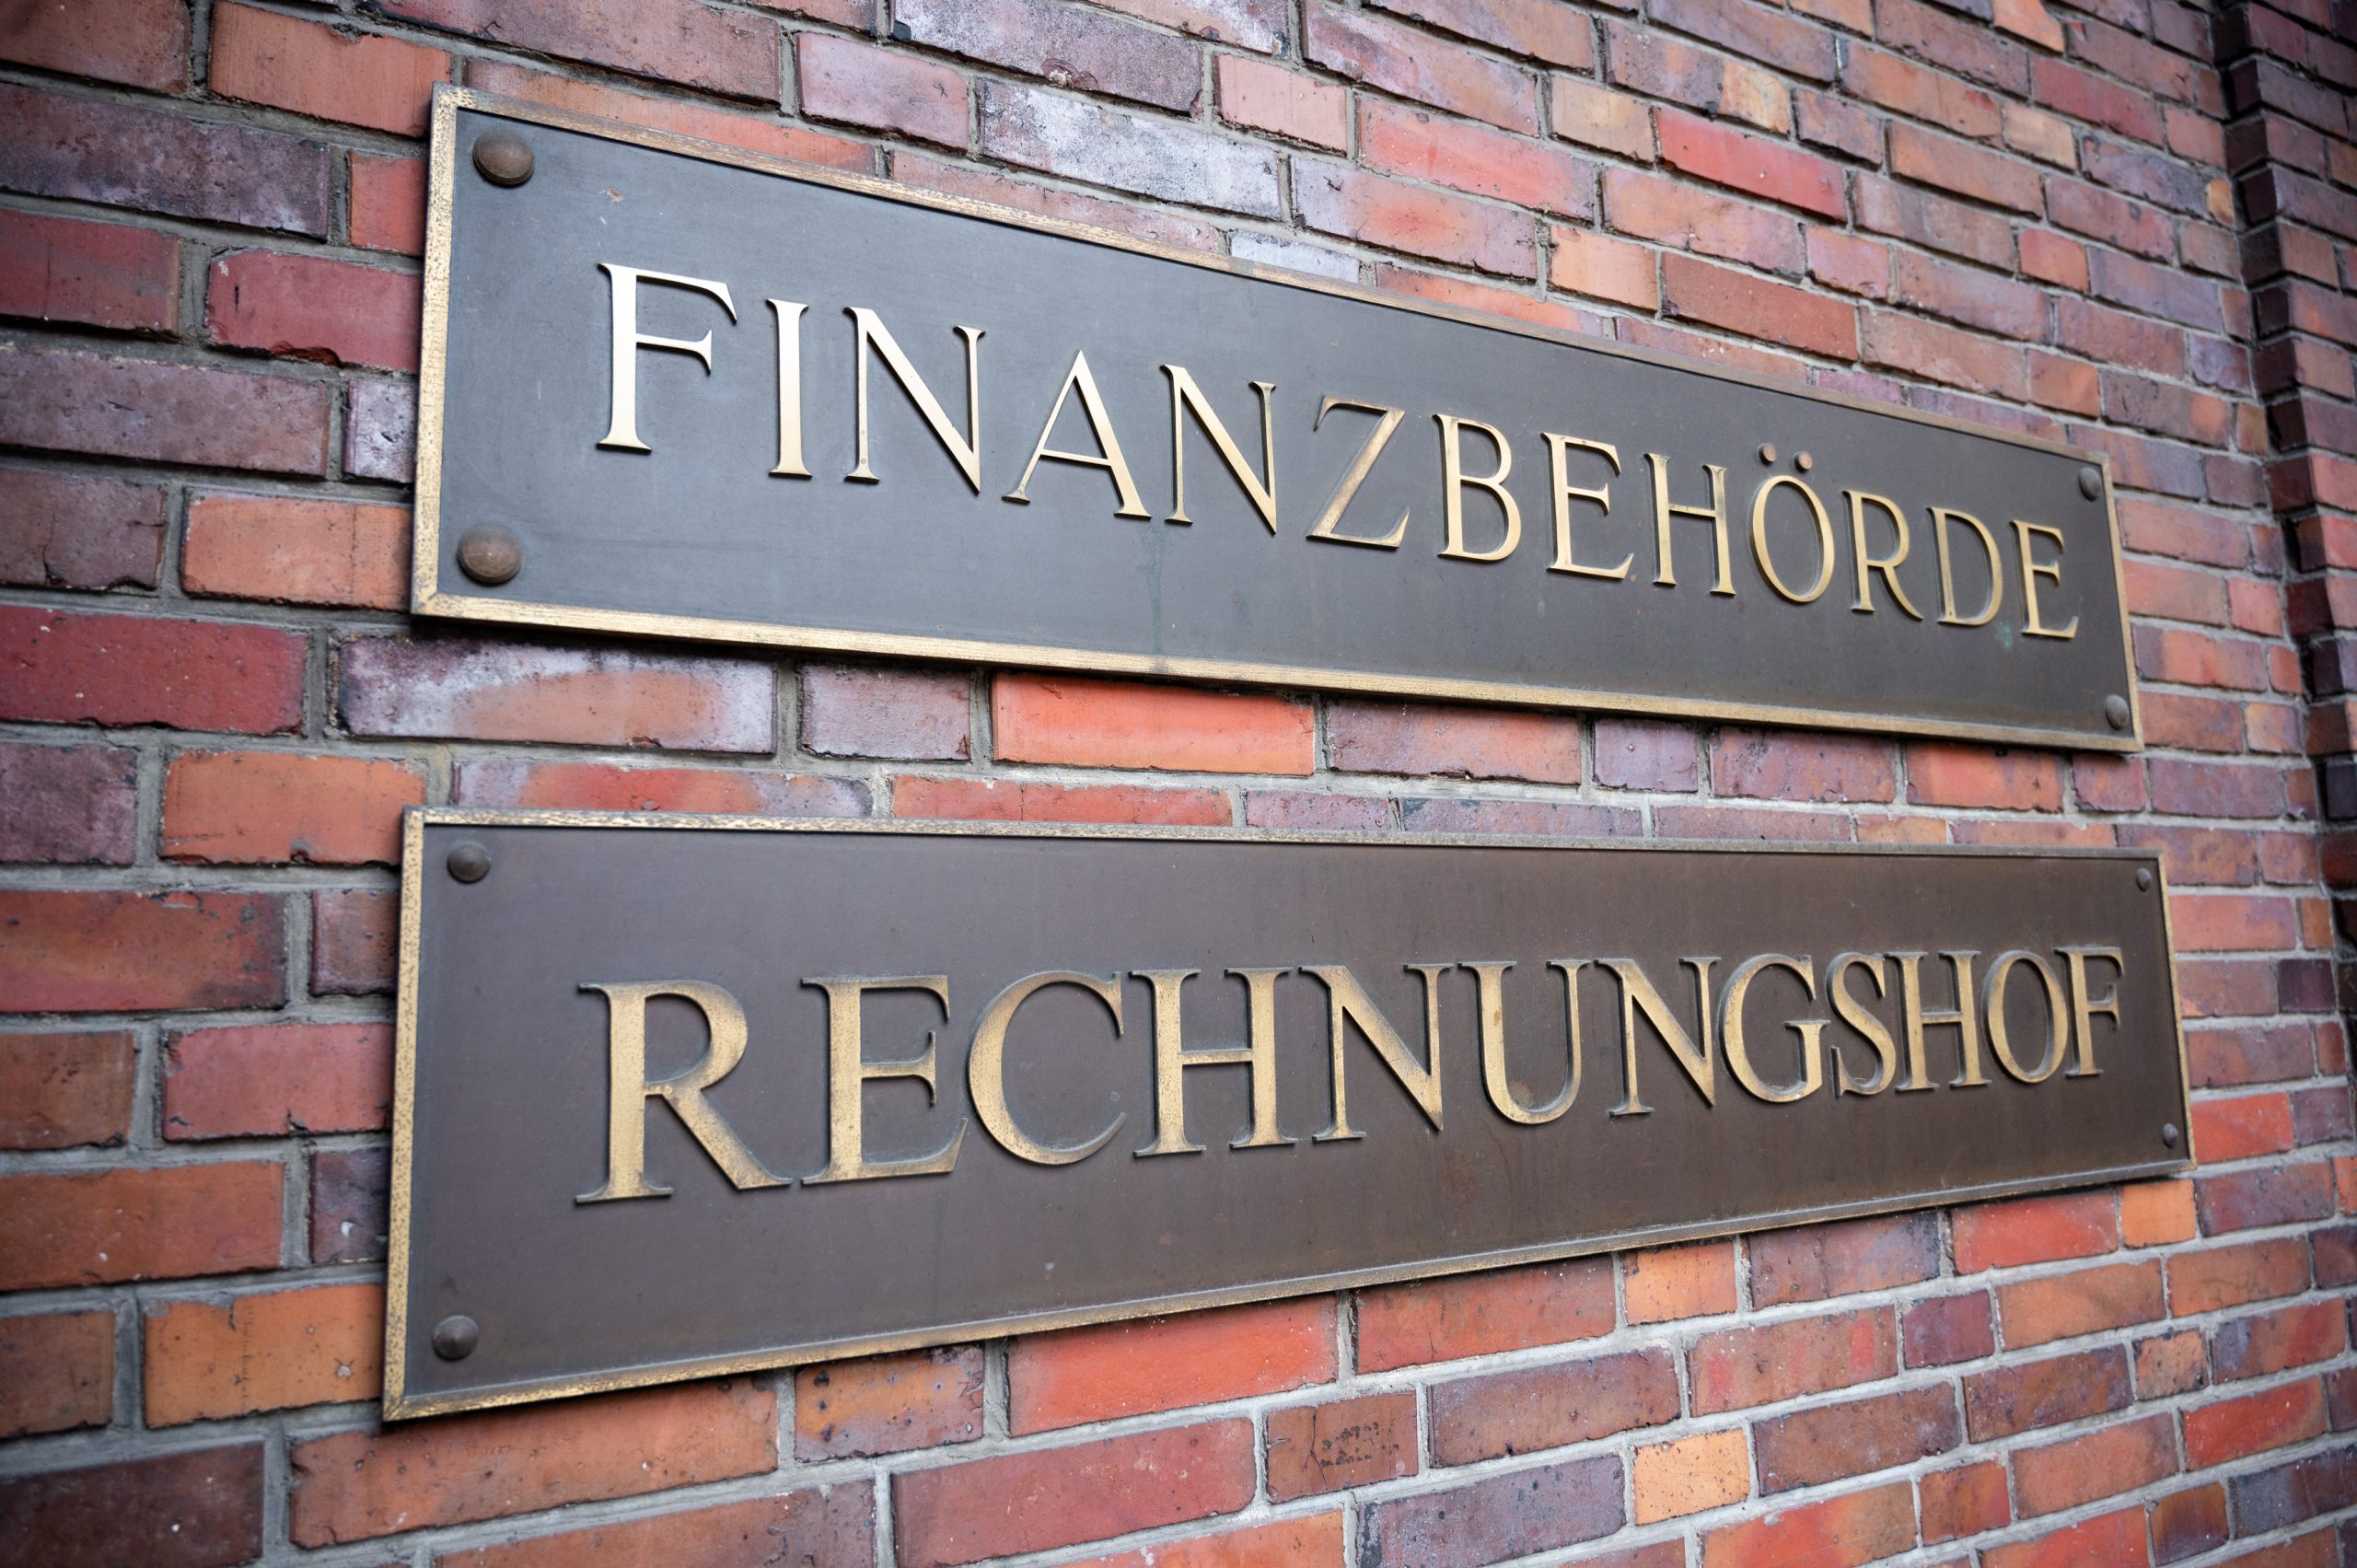 Die Schriftzüge „Finanzbehörde“ und „Rechnungshof“, sind am Gebäude des Rechnungshofes und der Finanzbehörde der Freien und Hansestadt Hamburg zu sehen.